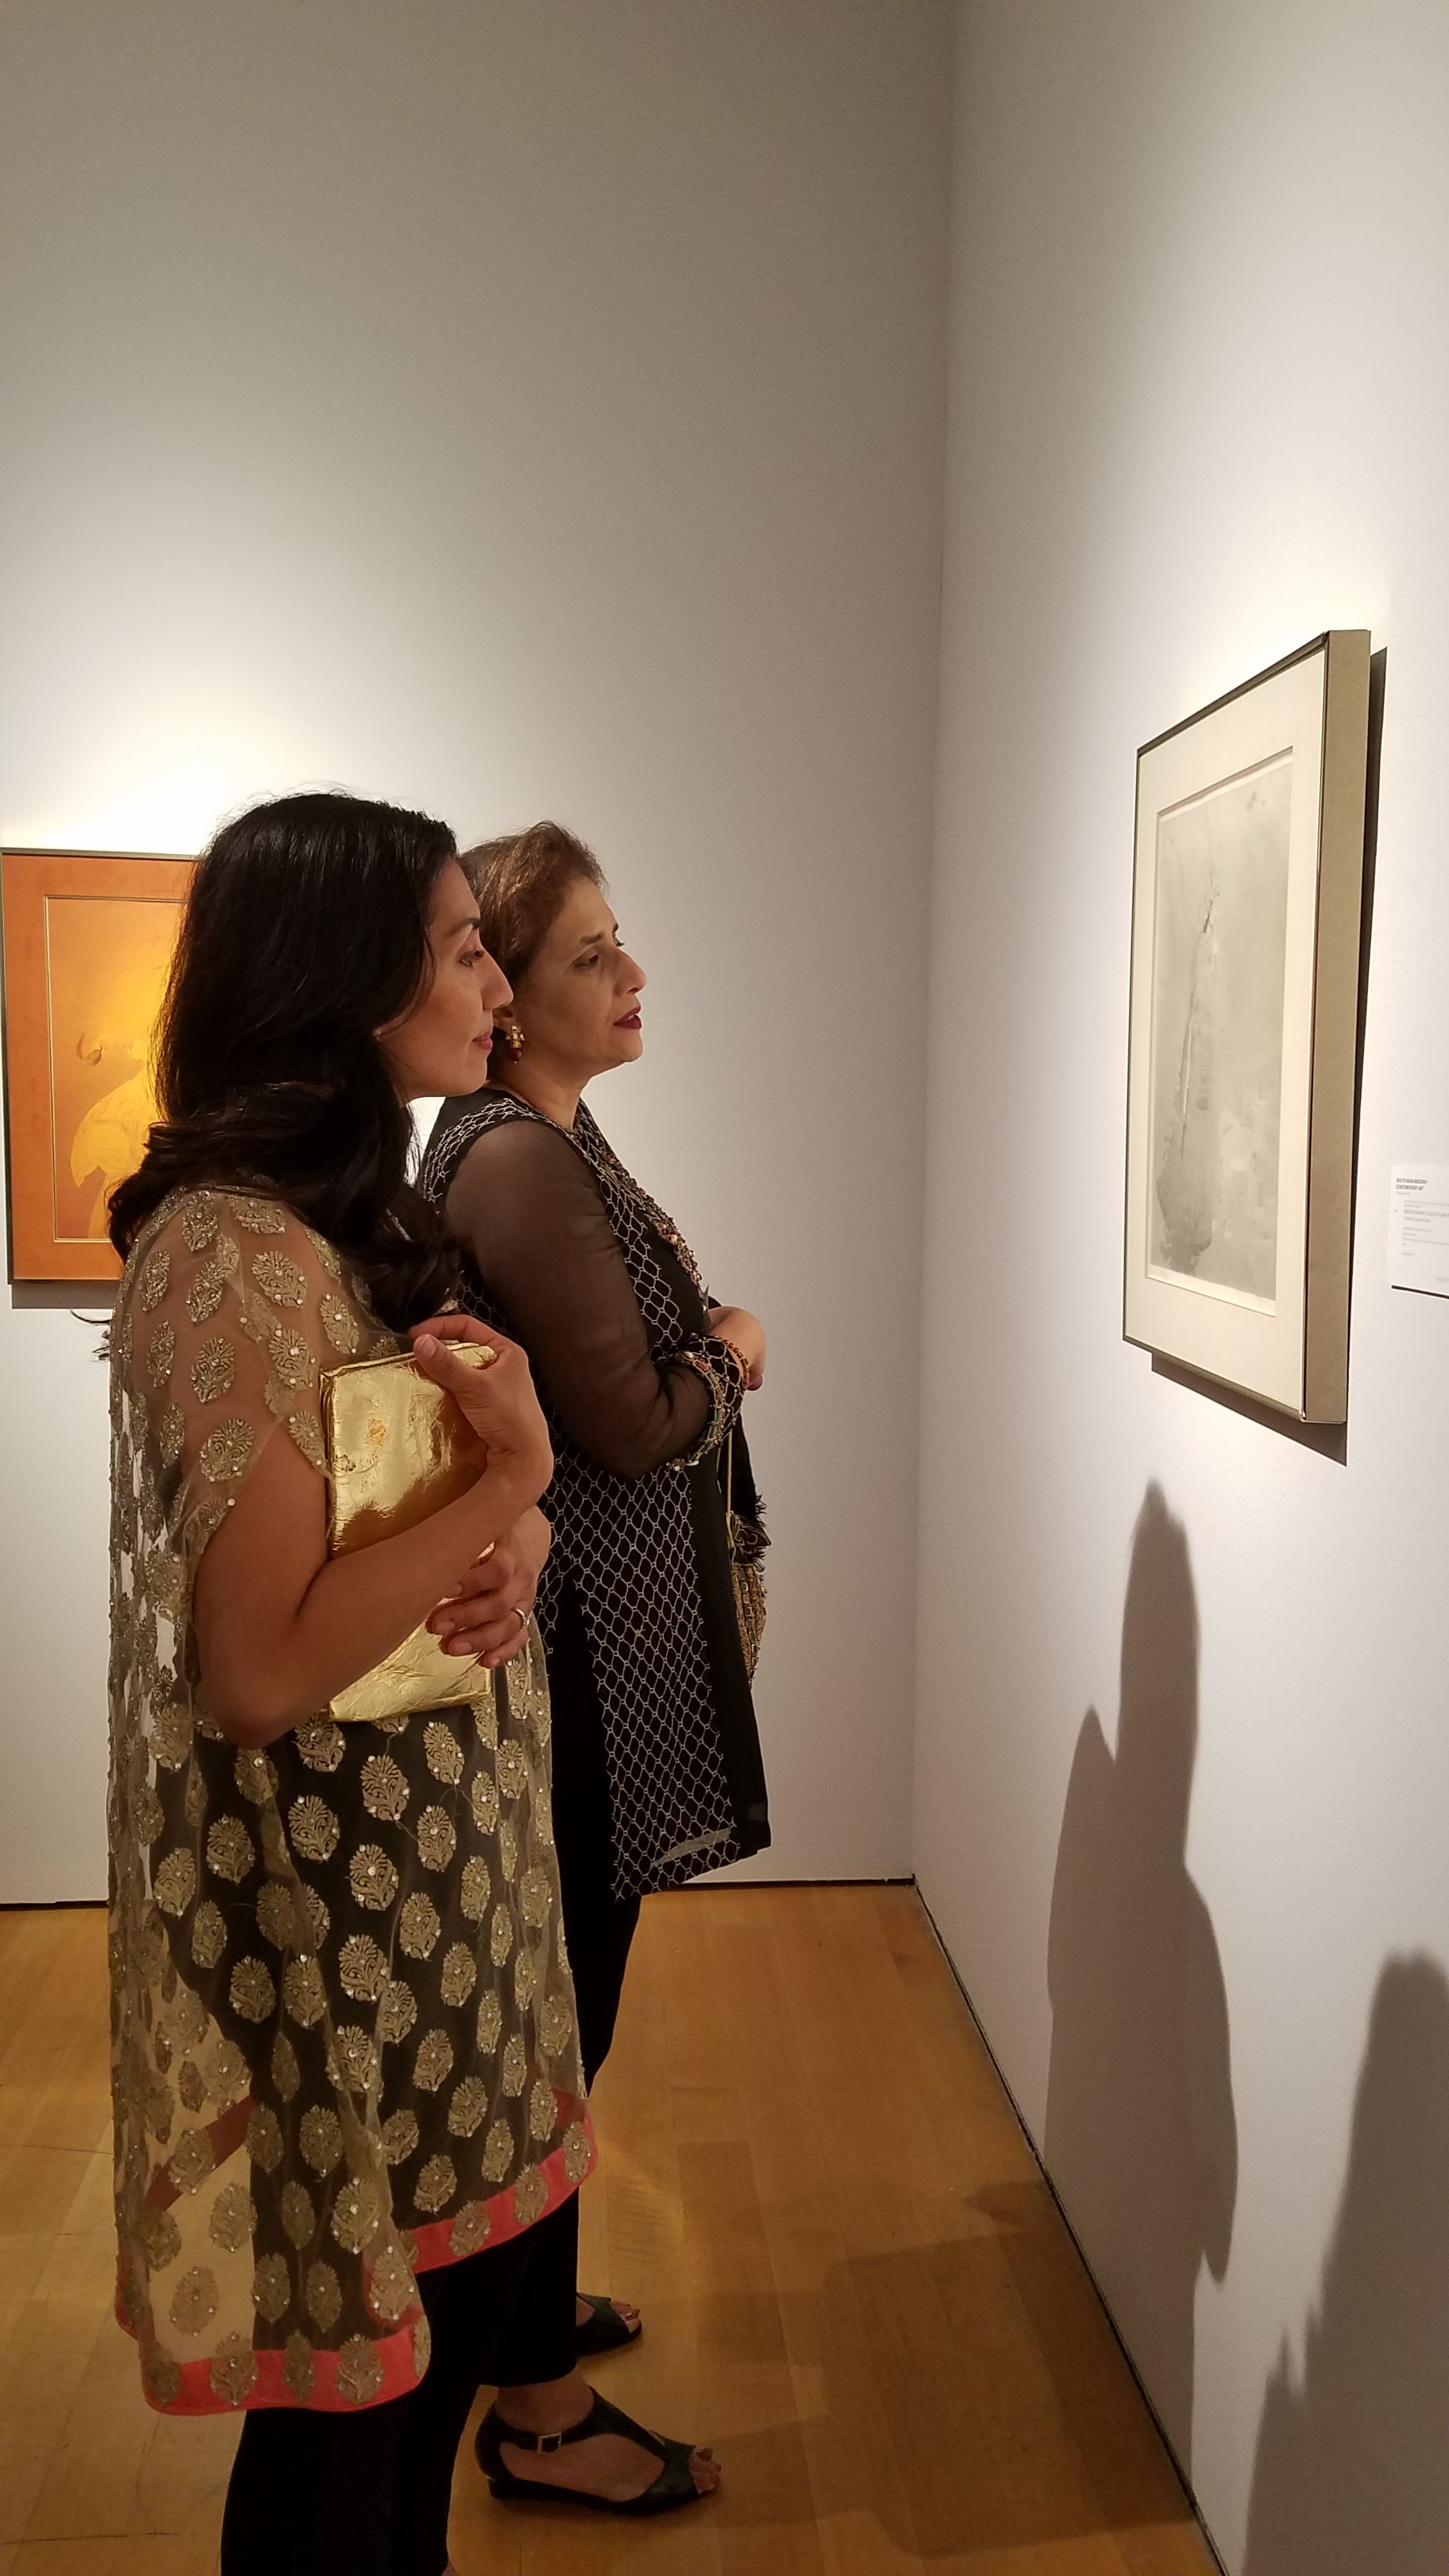 Christie's Auction House Features Pakistani Art